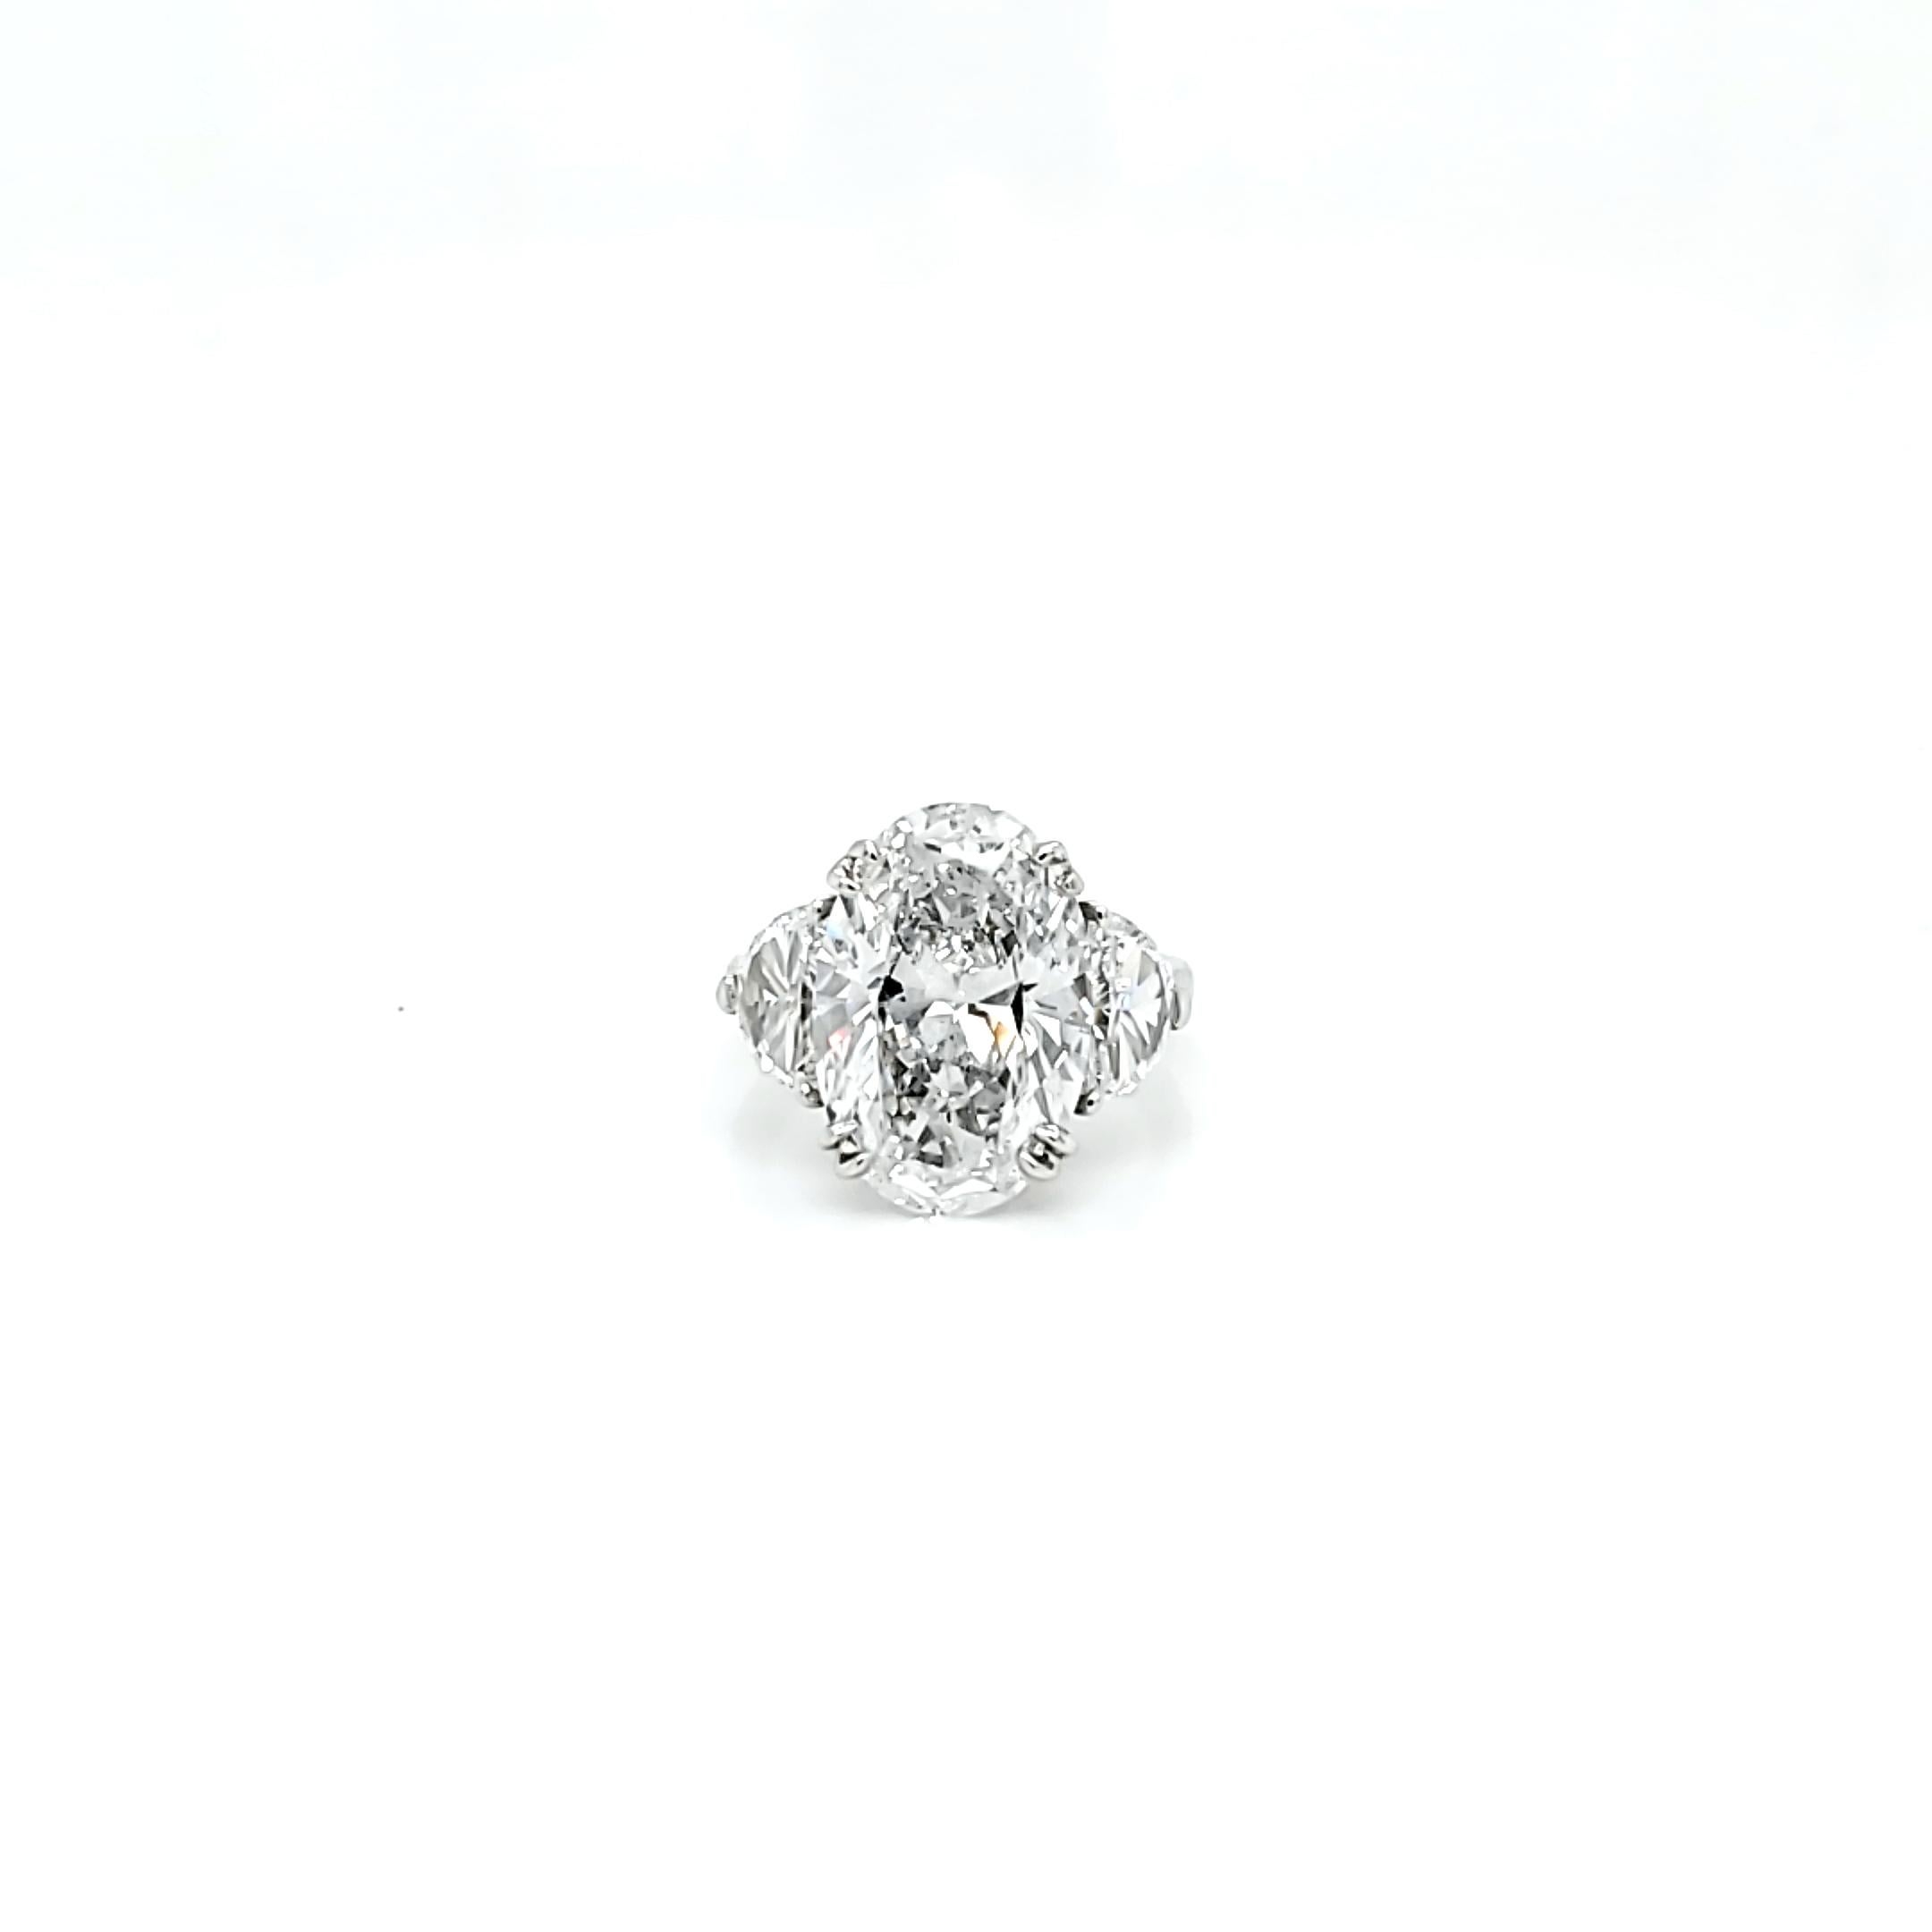 6.16 carat diamond price